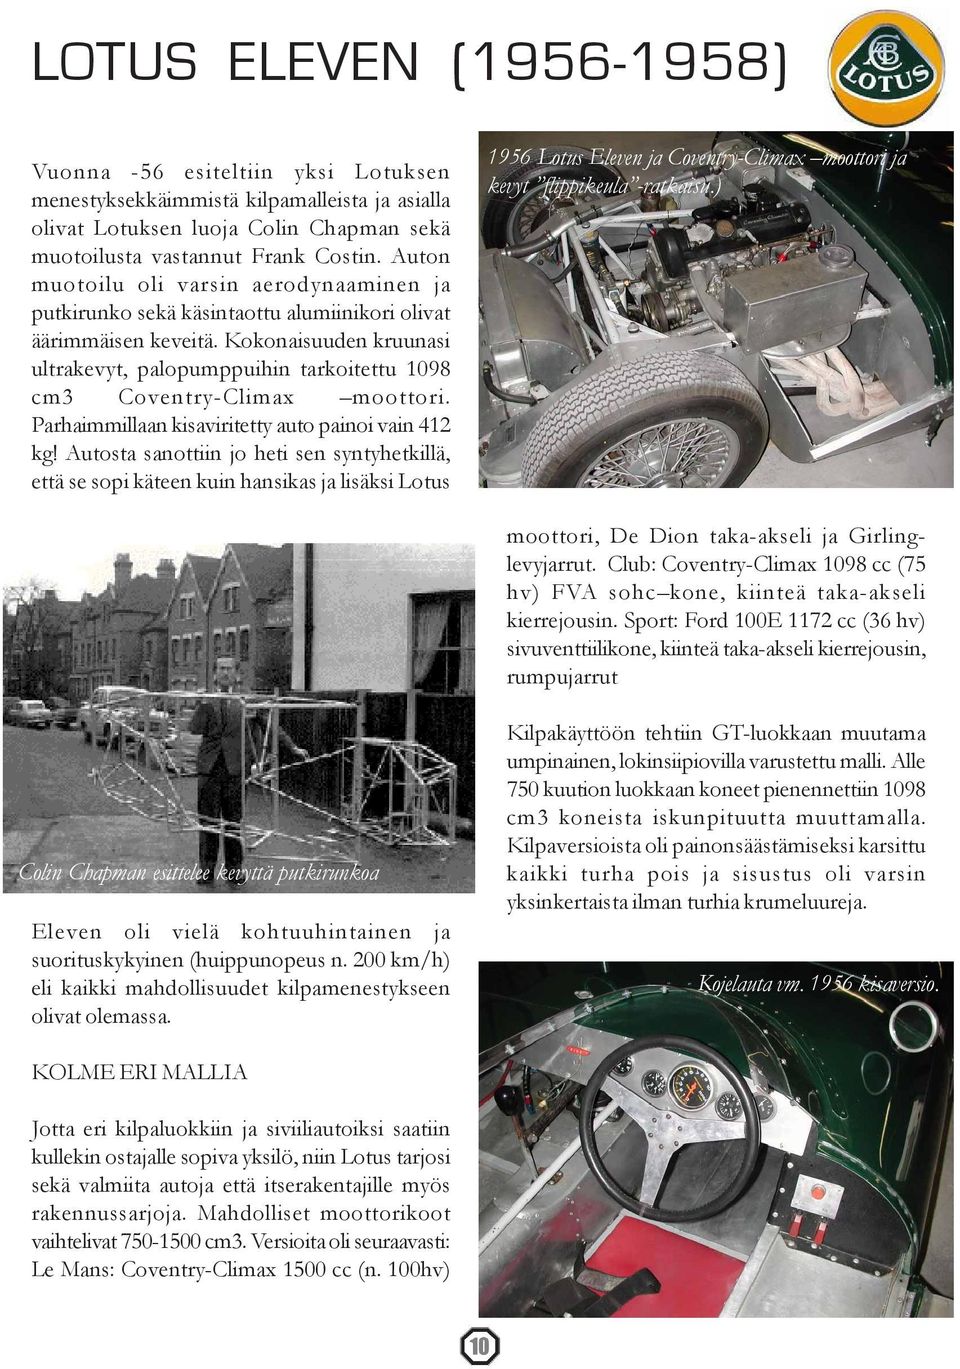 Kokonaisuuden kruunasi ultrakevyt, palopumppuihin tarkoitettu 1098 cm3 Coventry-Climax moottori. Parhaimmillaan kisaviritetty auto painoi vain 412 kg!